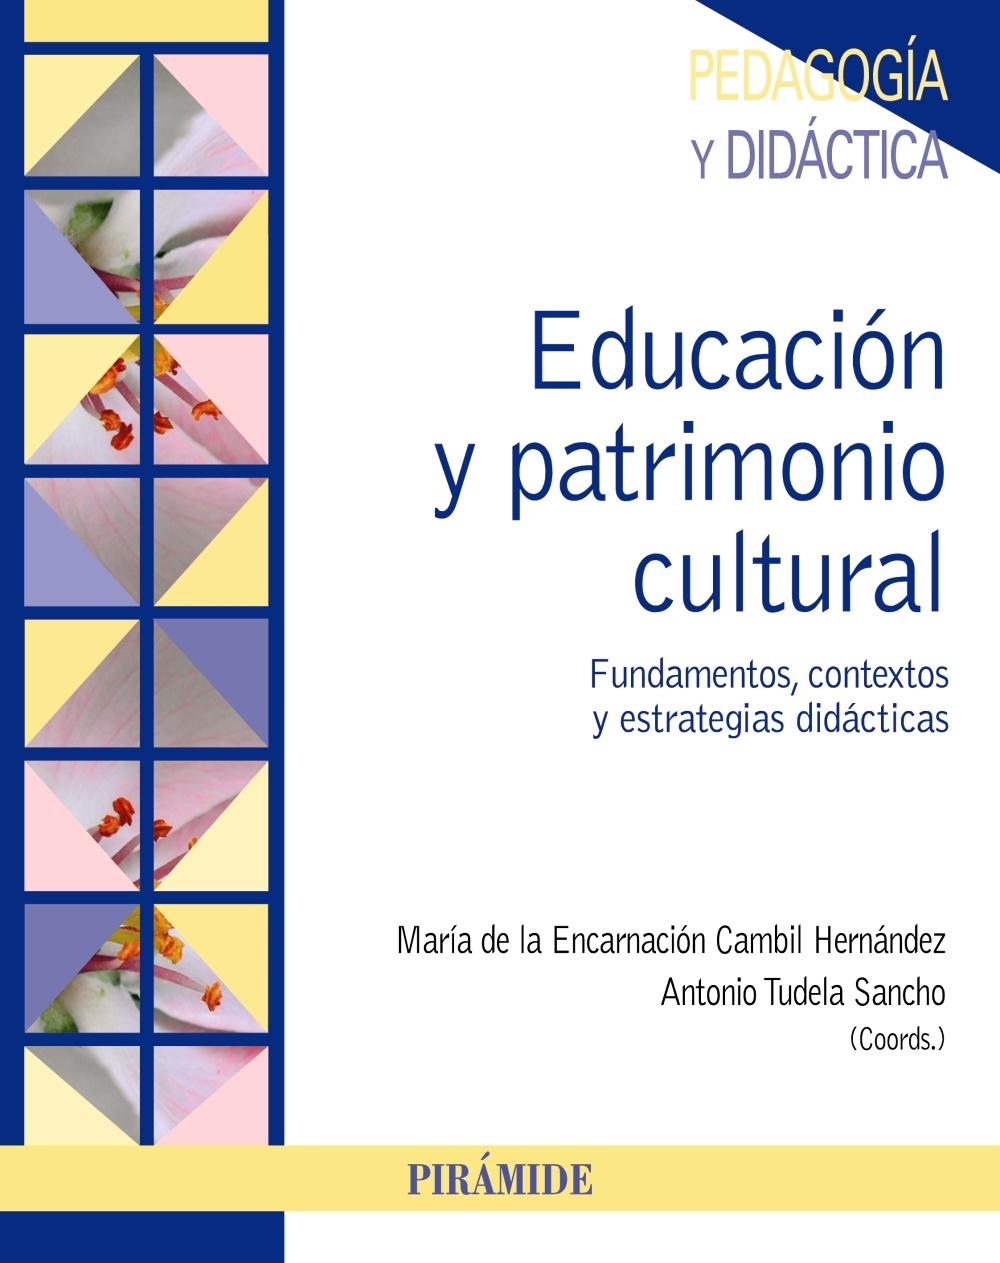 EDUCACIÓN Y PATRIMONIO CULTURAL "FUNDAMENTOS, CONTEXTOS Y ESTRATEGIAS DIDÁCTICAS". 